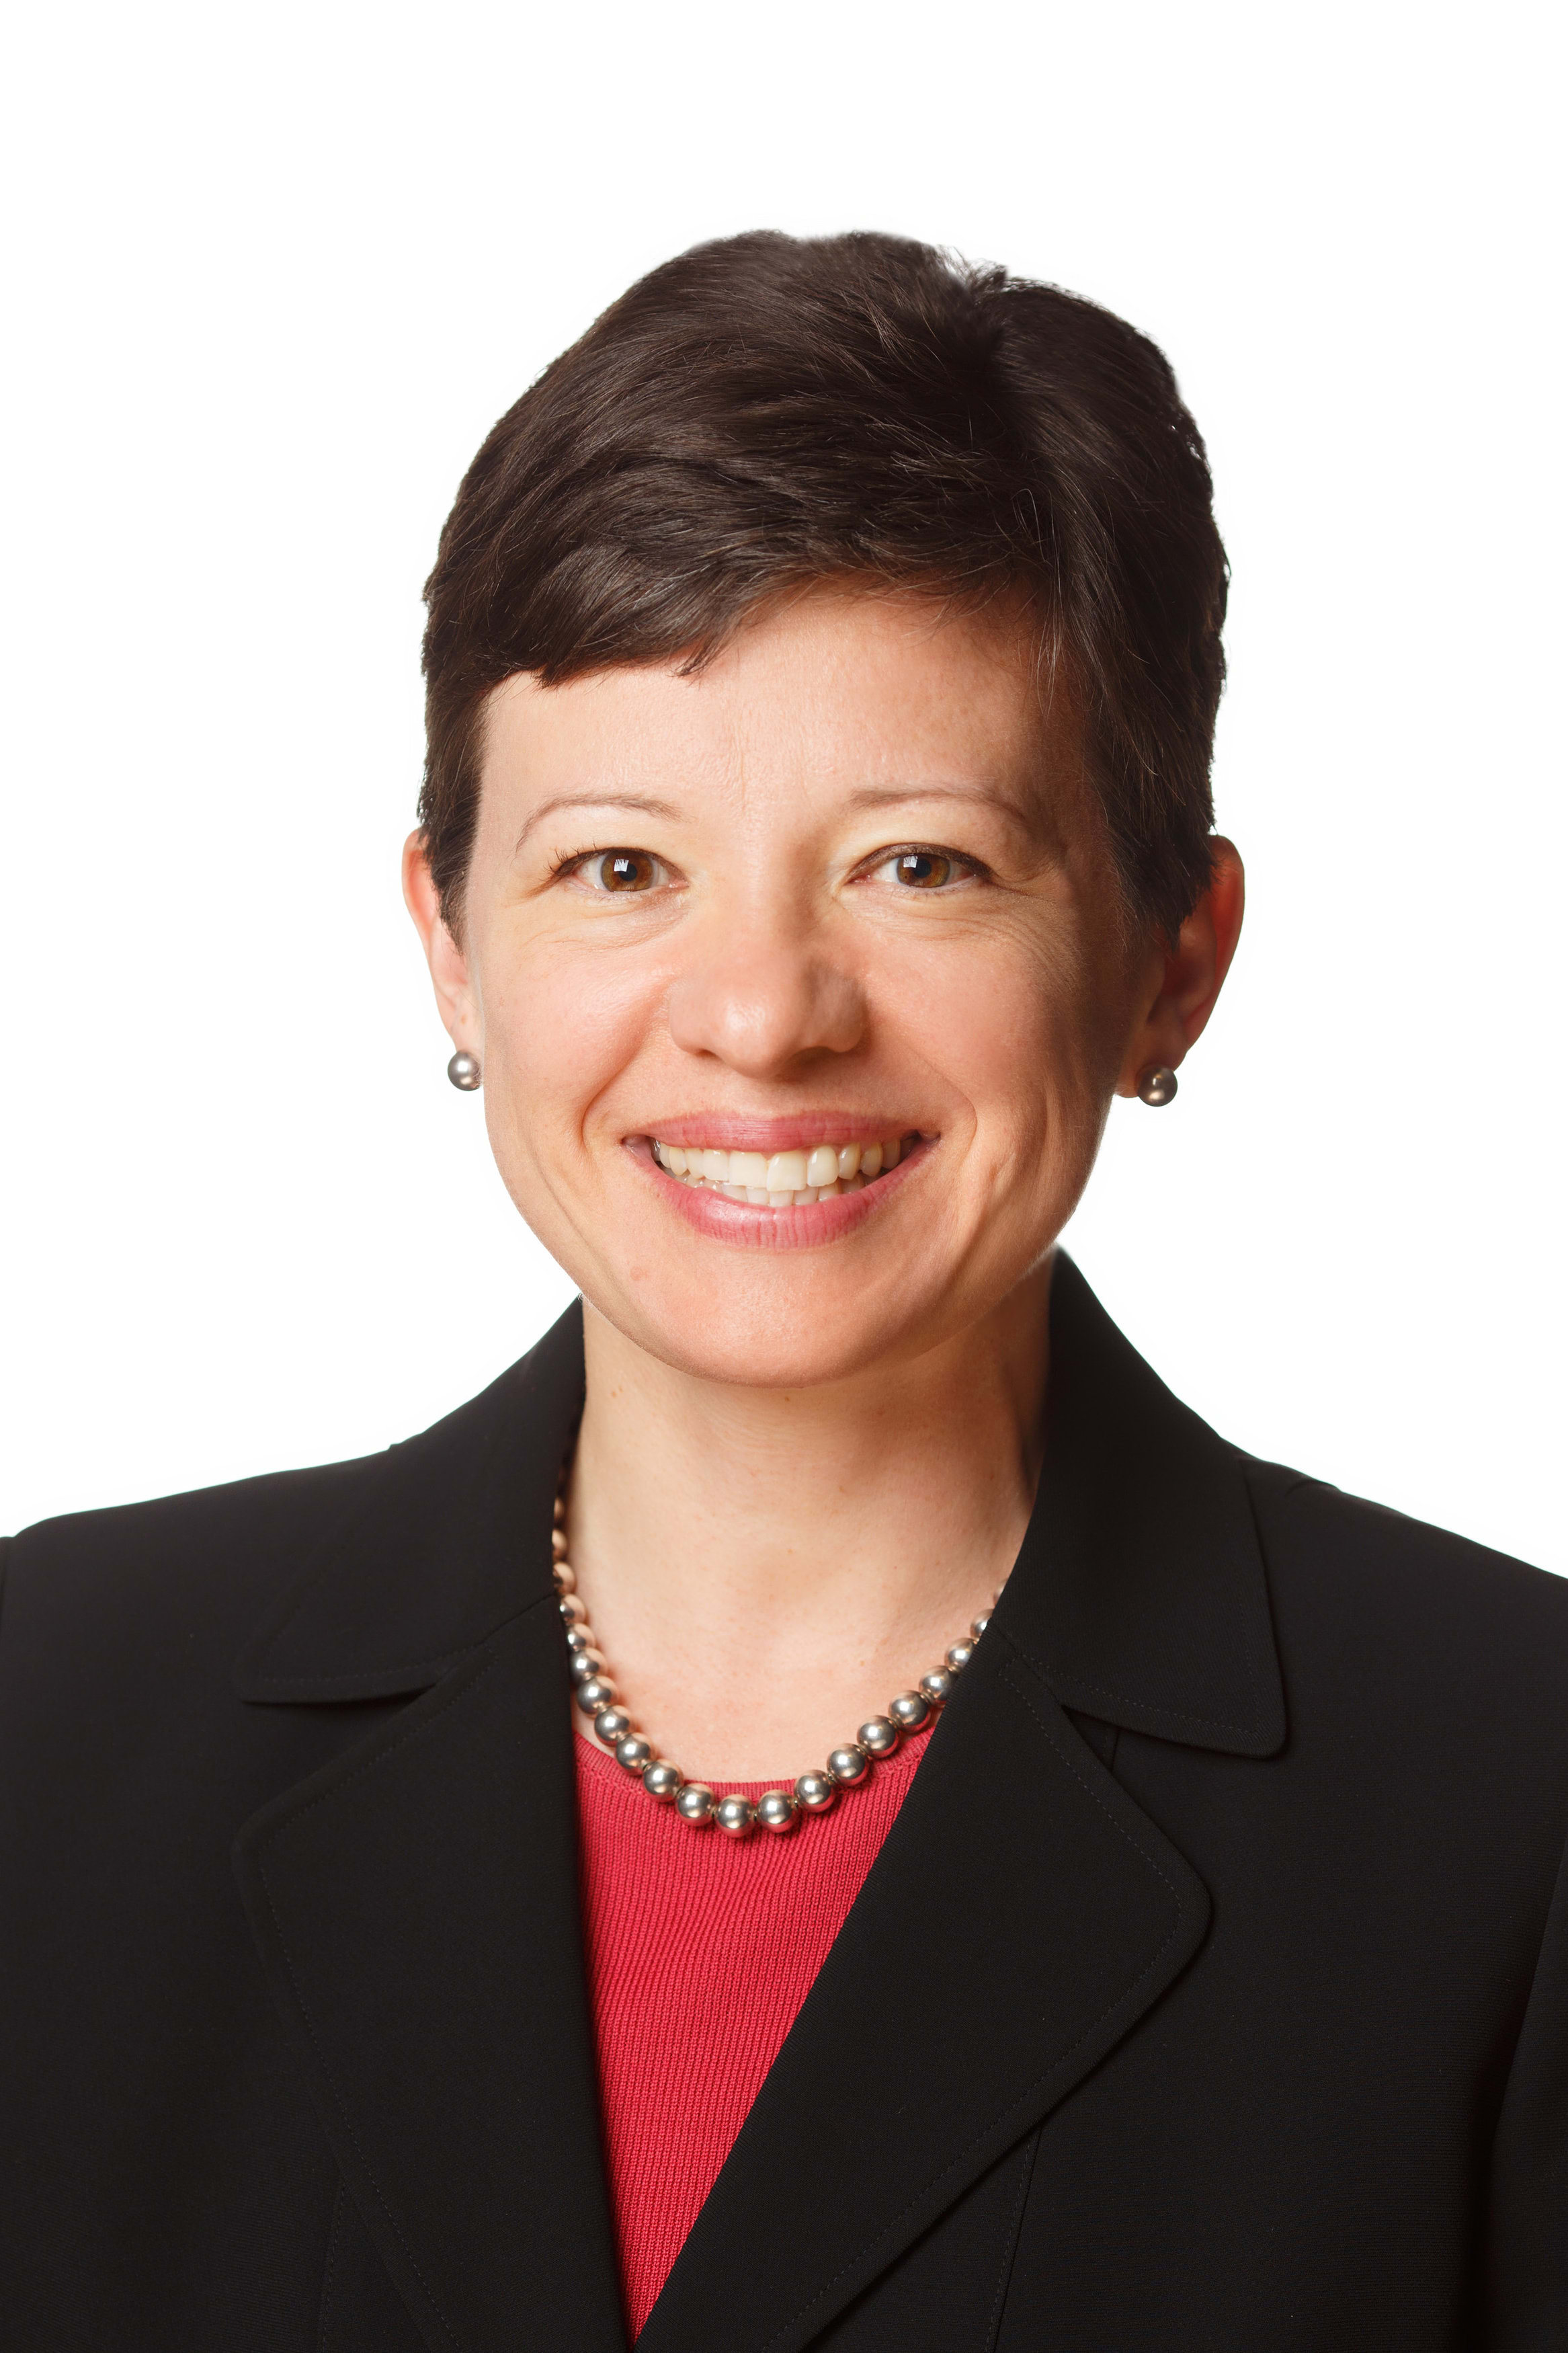 Dr. Sarah Hamilton Boyles MD